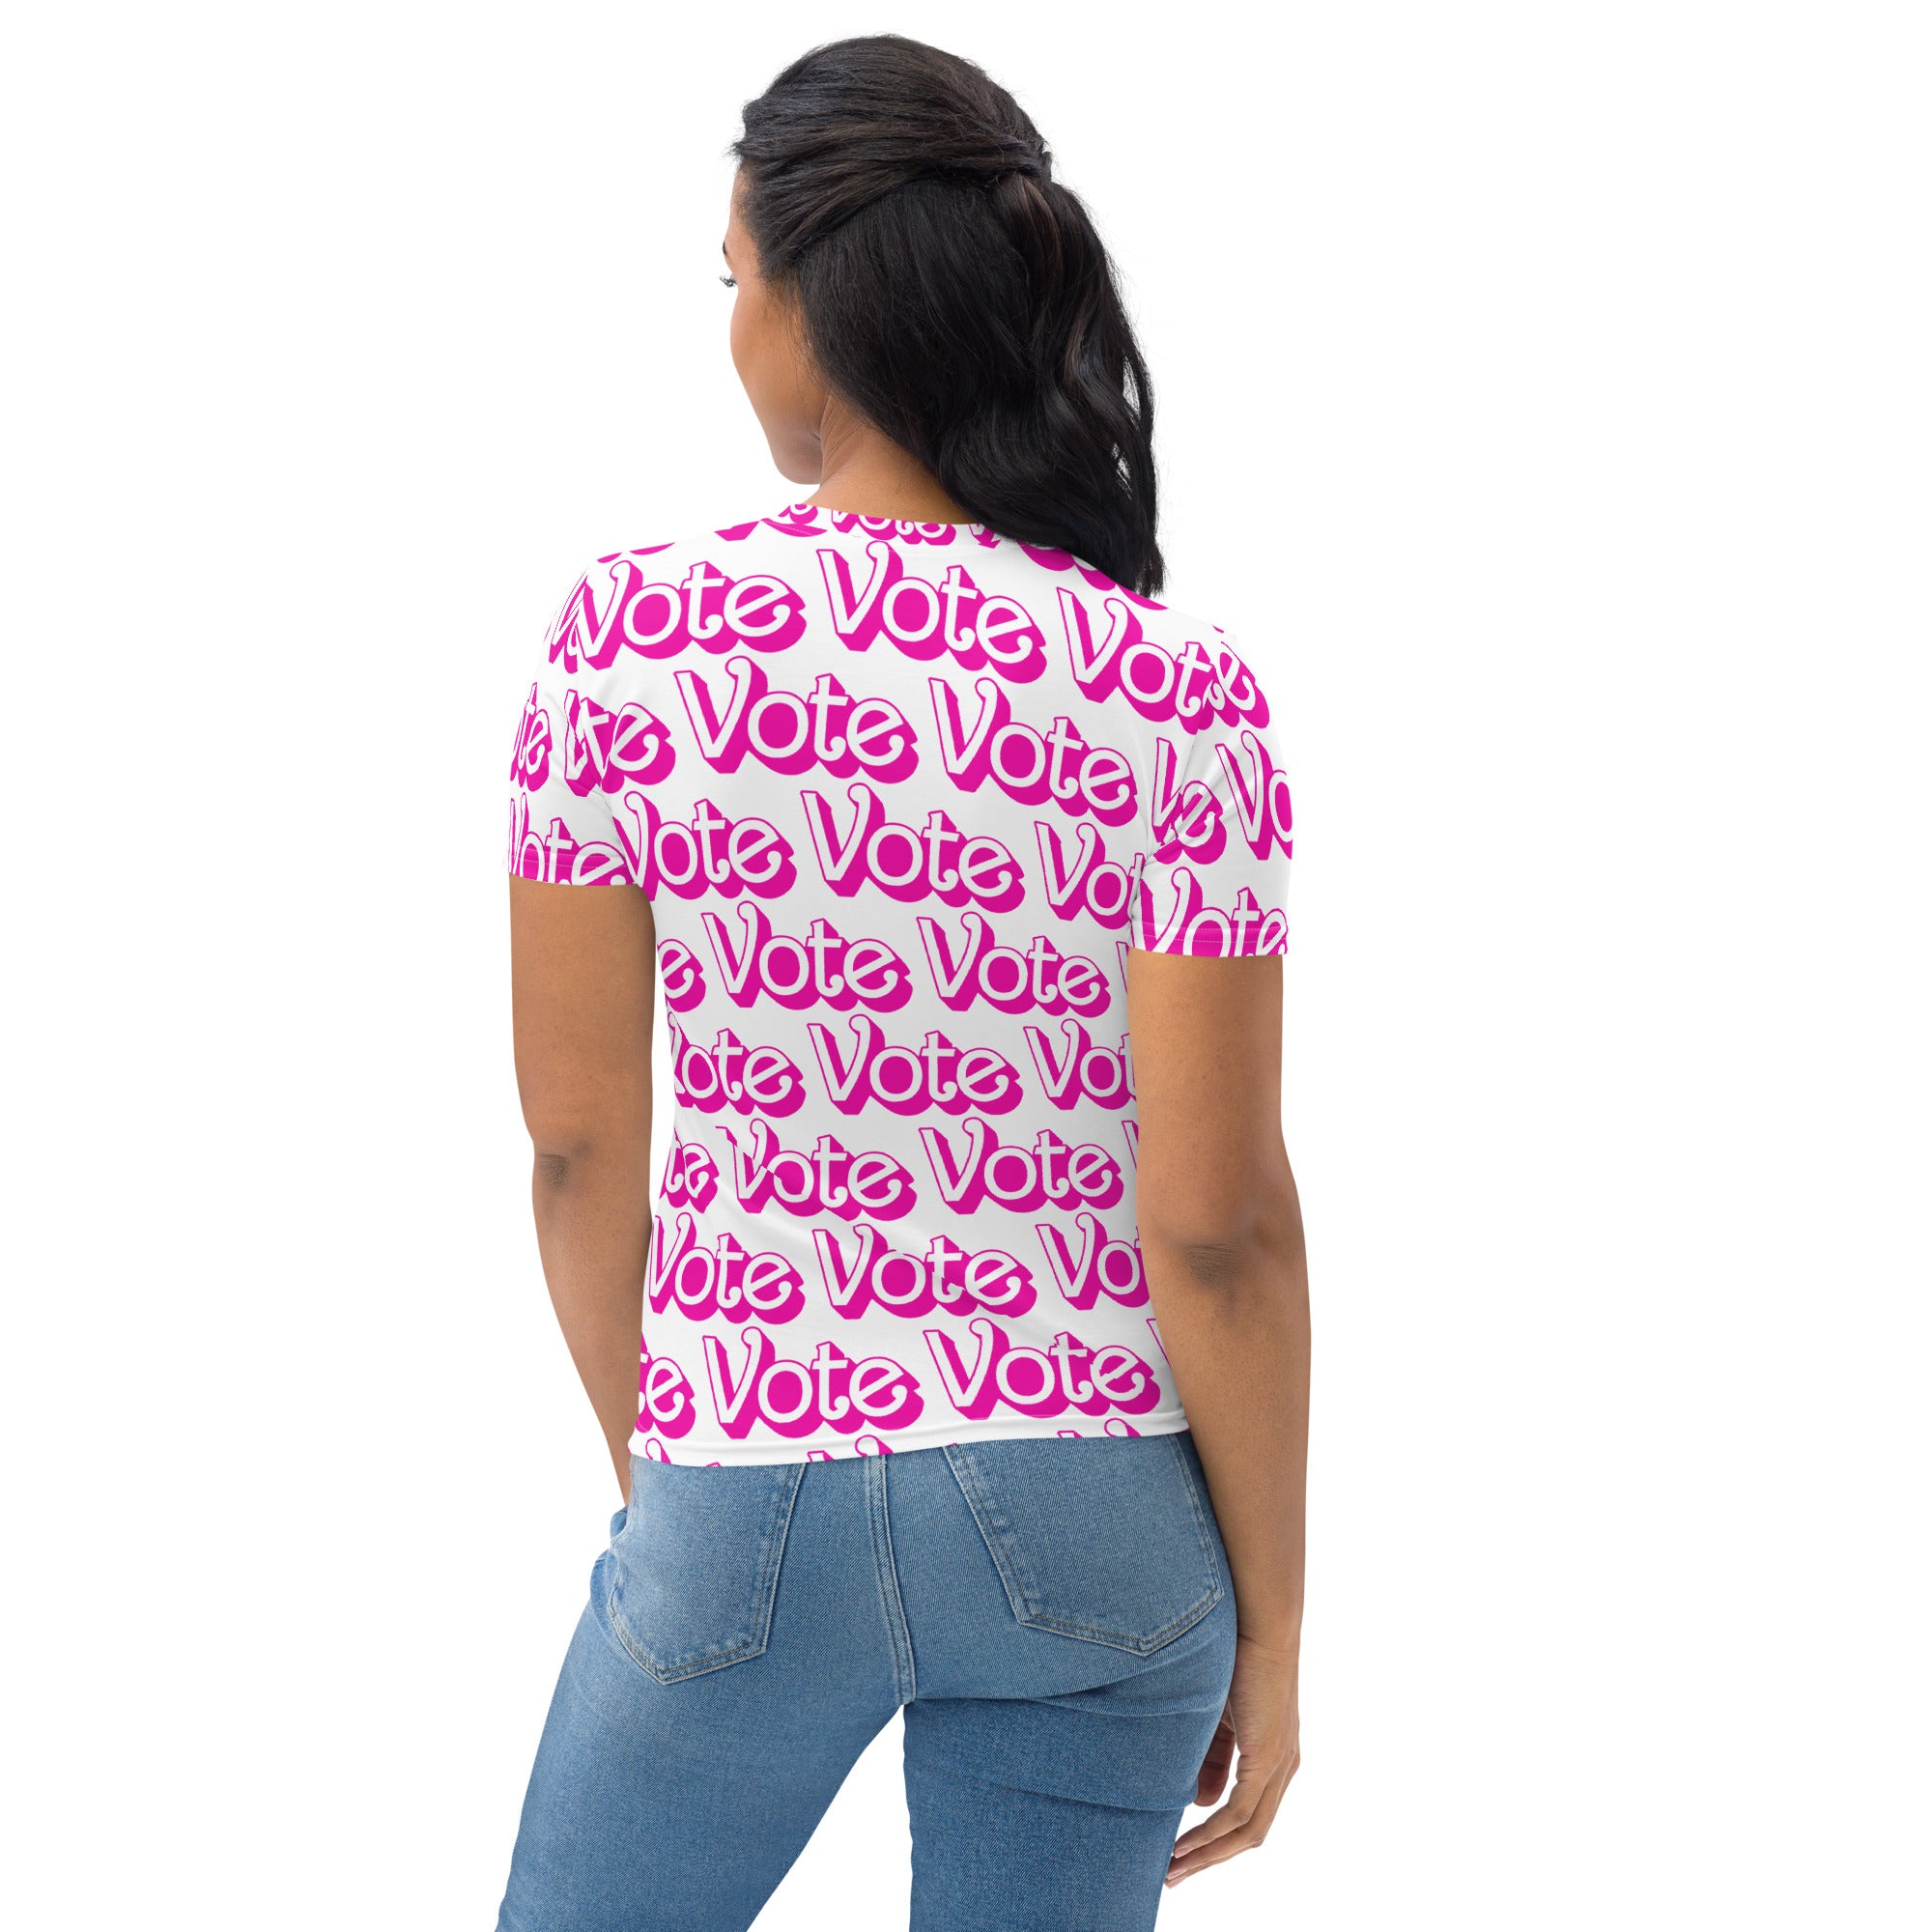 Vote (Vote Vote Vote) Pink - Women's T-shirt